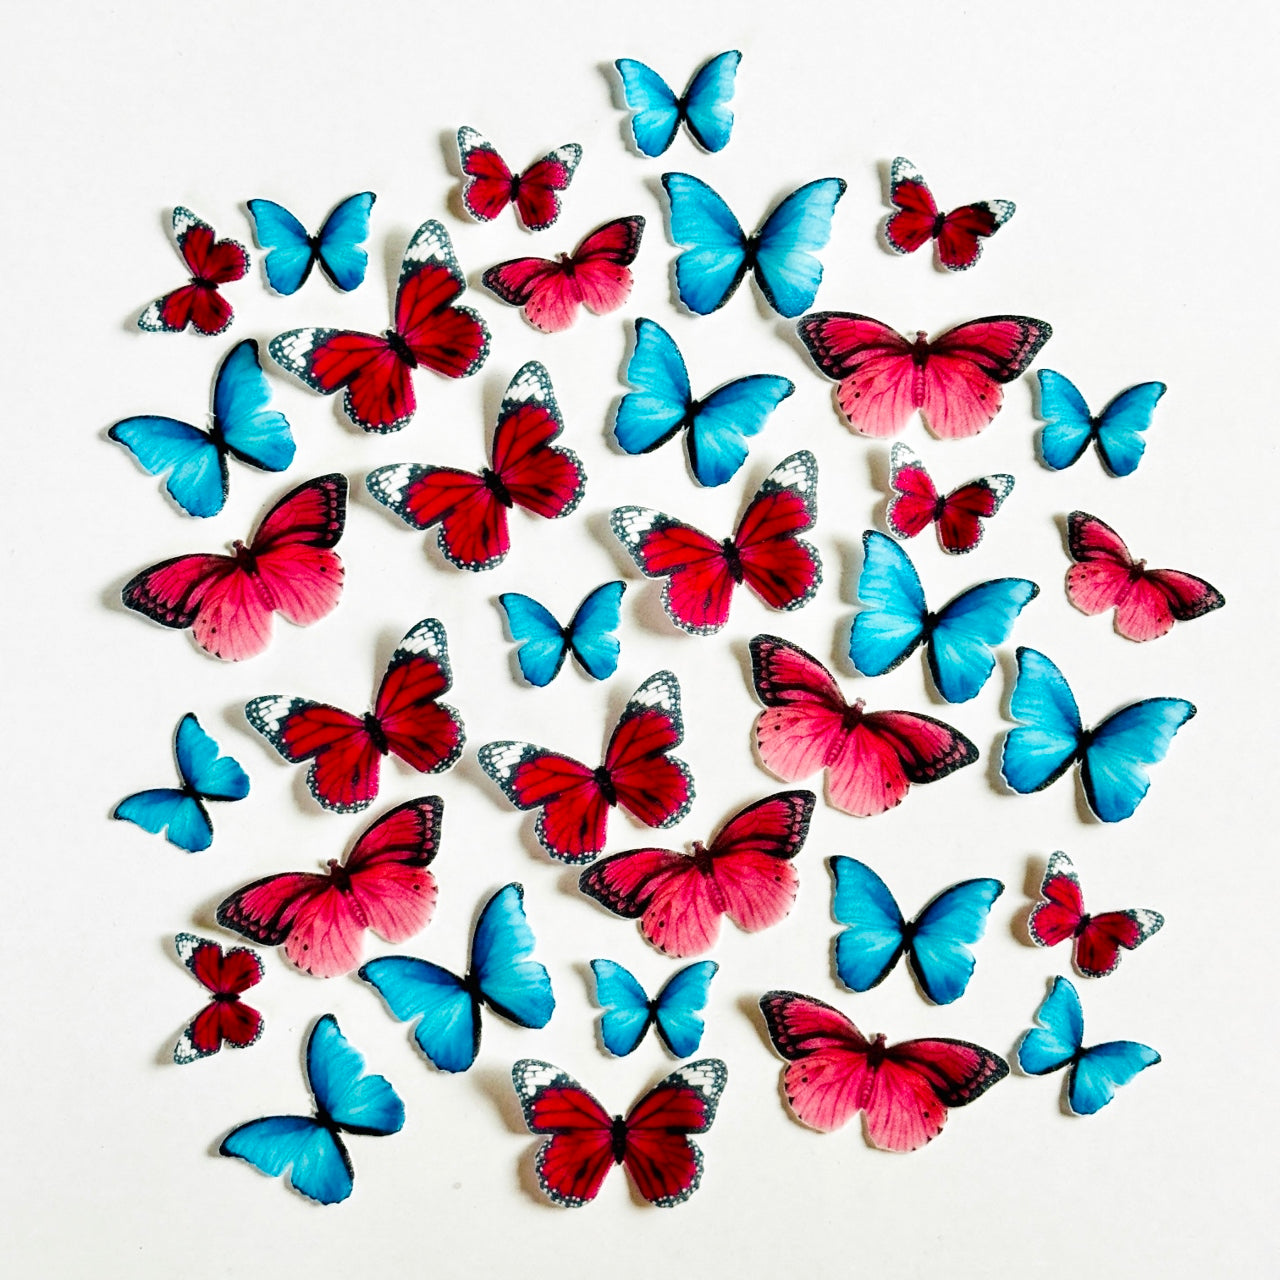 Βρώσιμες πεταλούδες κόκκινες, ροζ και μπλε 35 τεμ